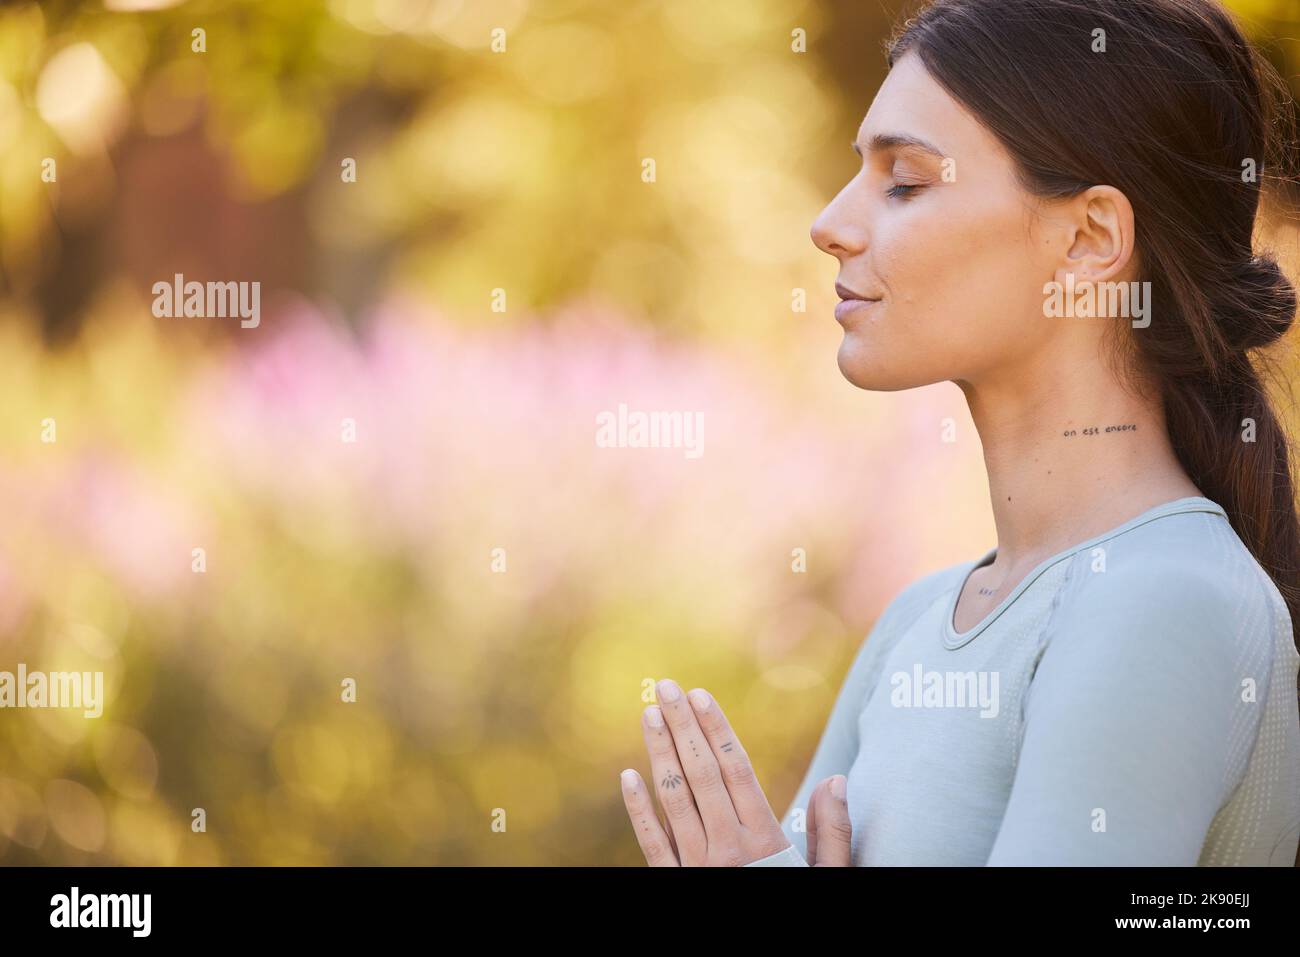 Calma, meditación y mujer haciendo yoga en el parque para la paz, tranquilidad y zen. Estilo de vida saludable, relax y manos de la niña juntas para mediar en la naturaleza Foto de stock